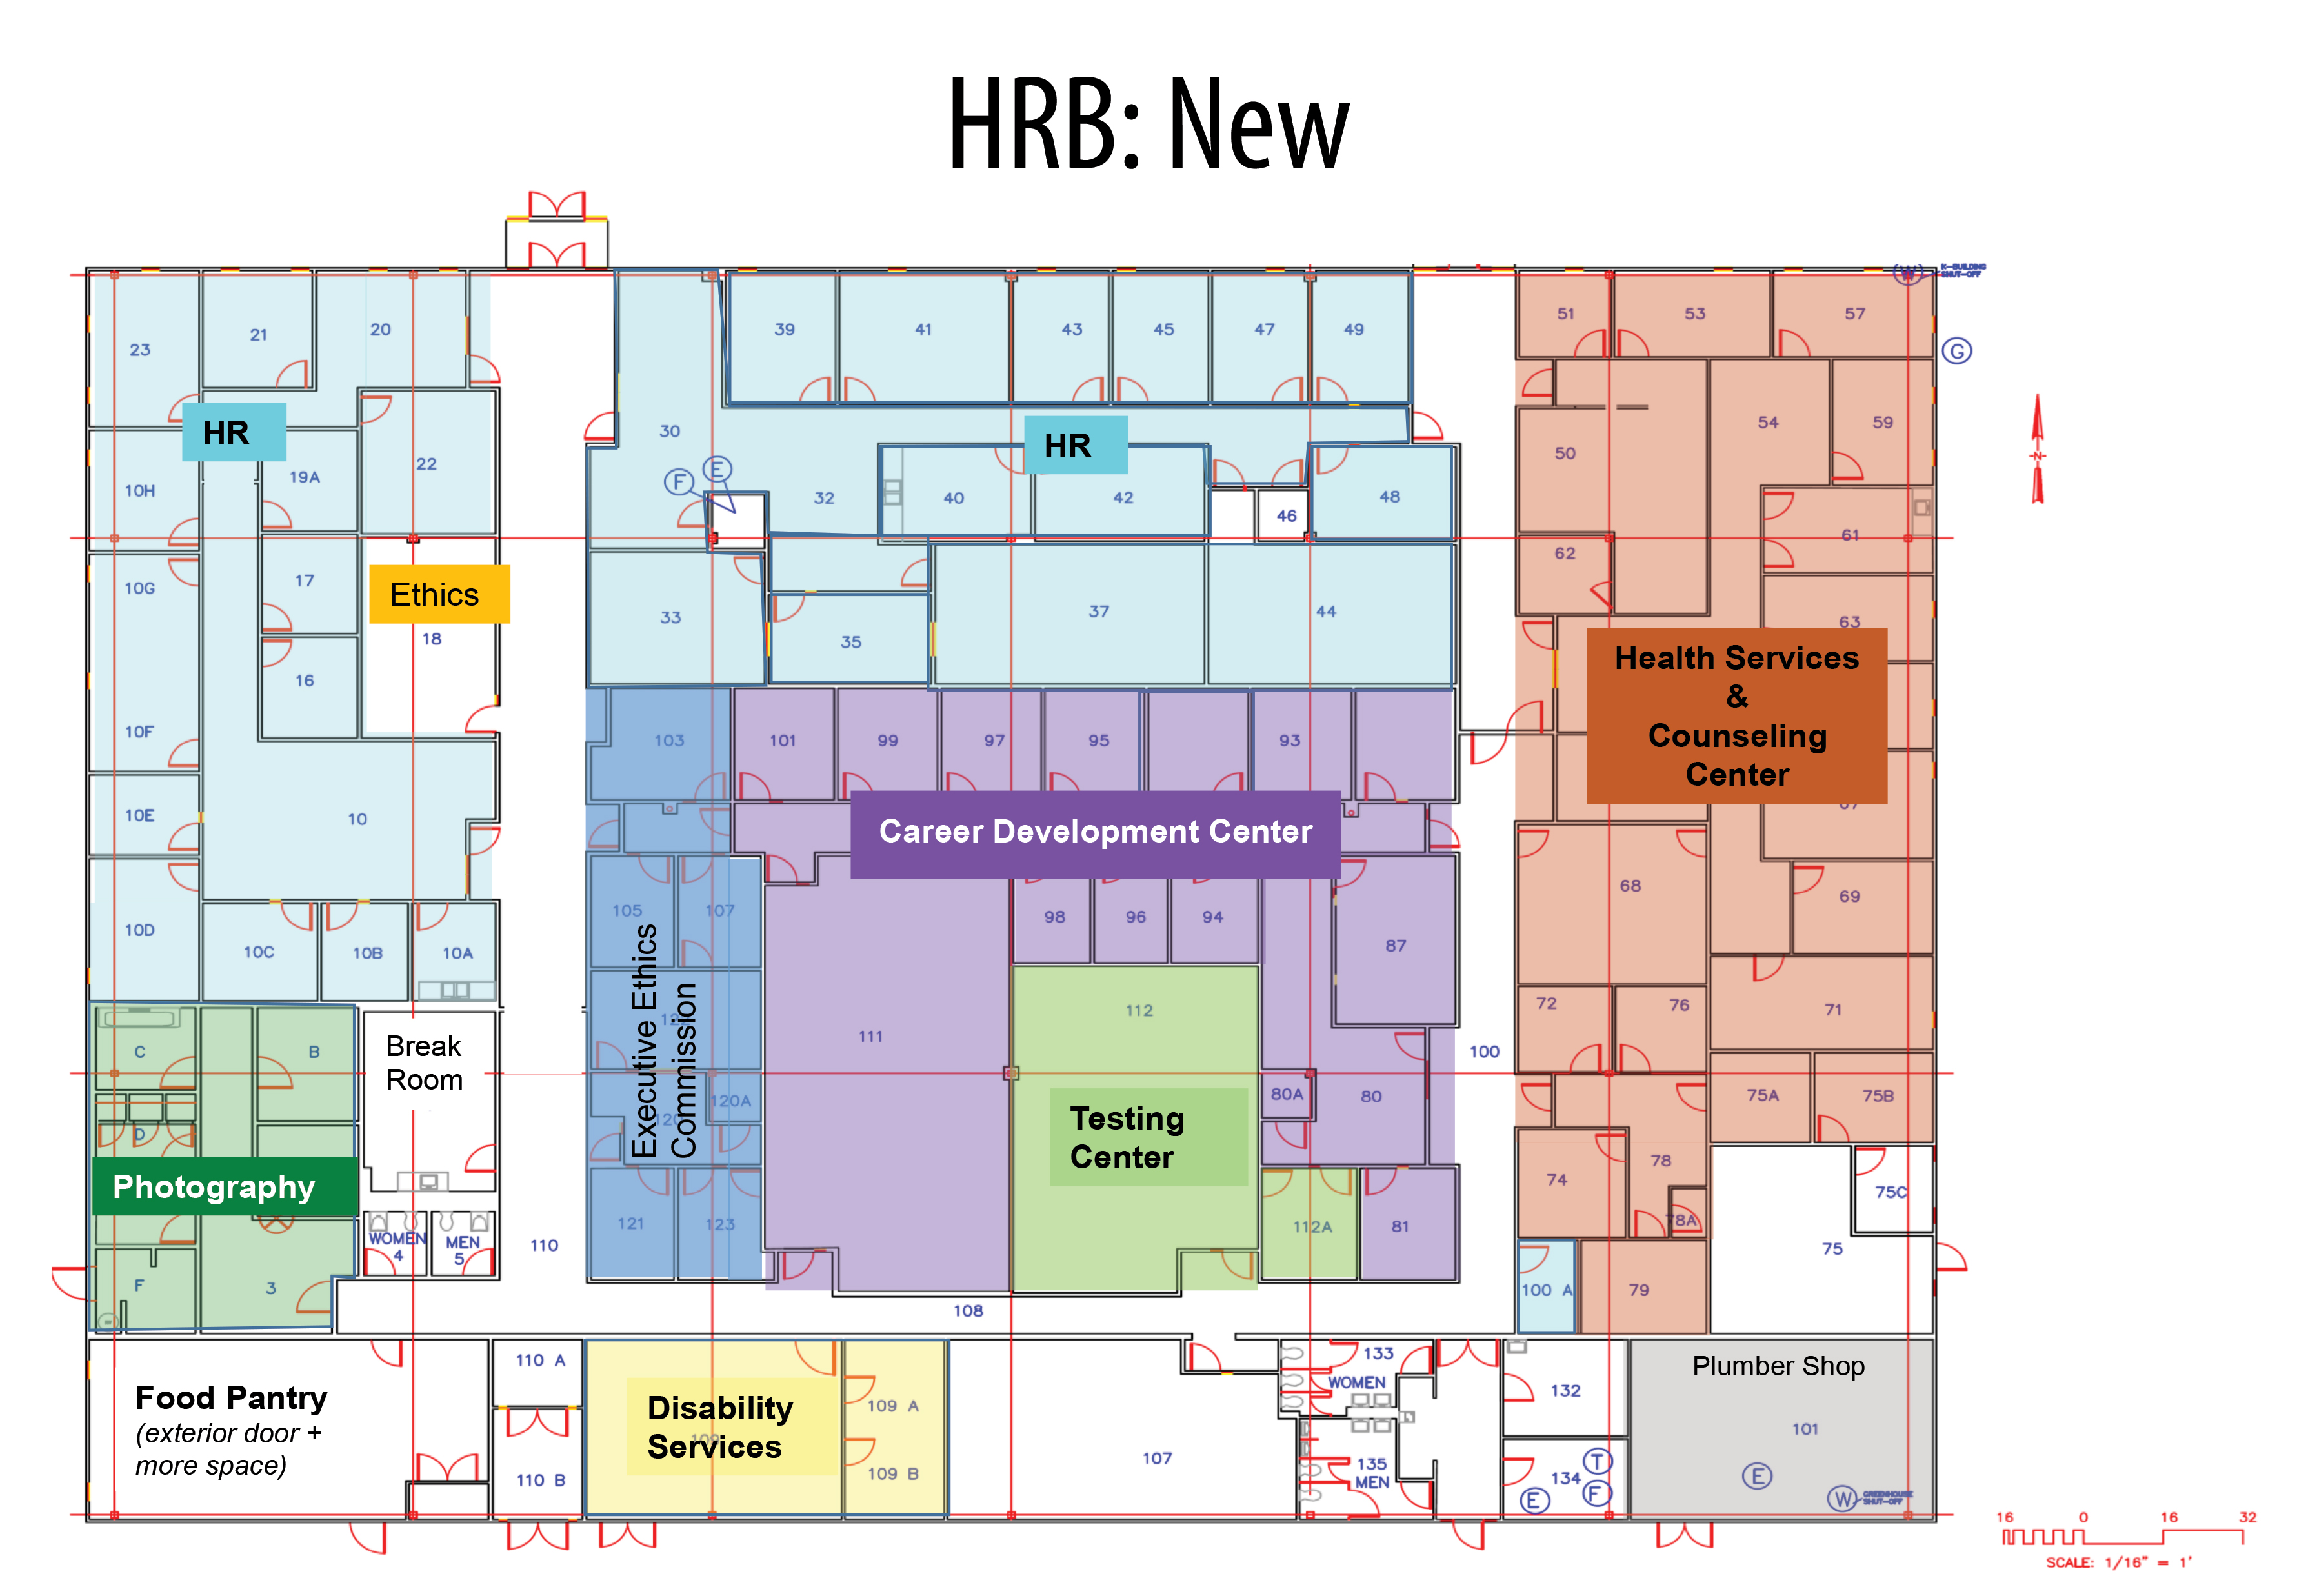 HRB Blueprint - New